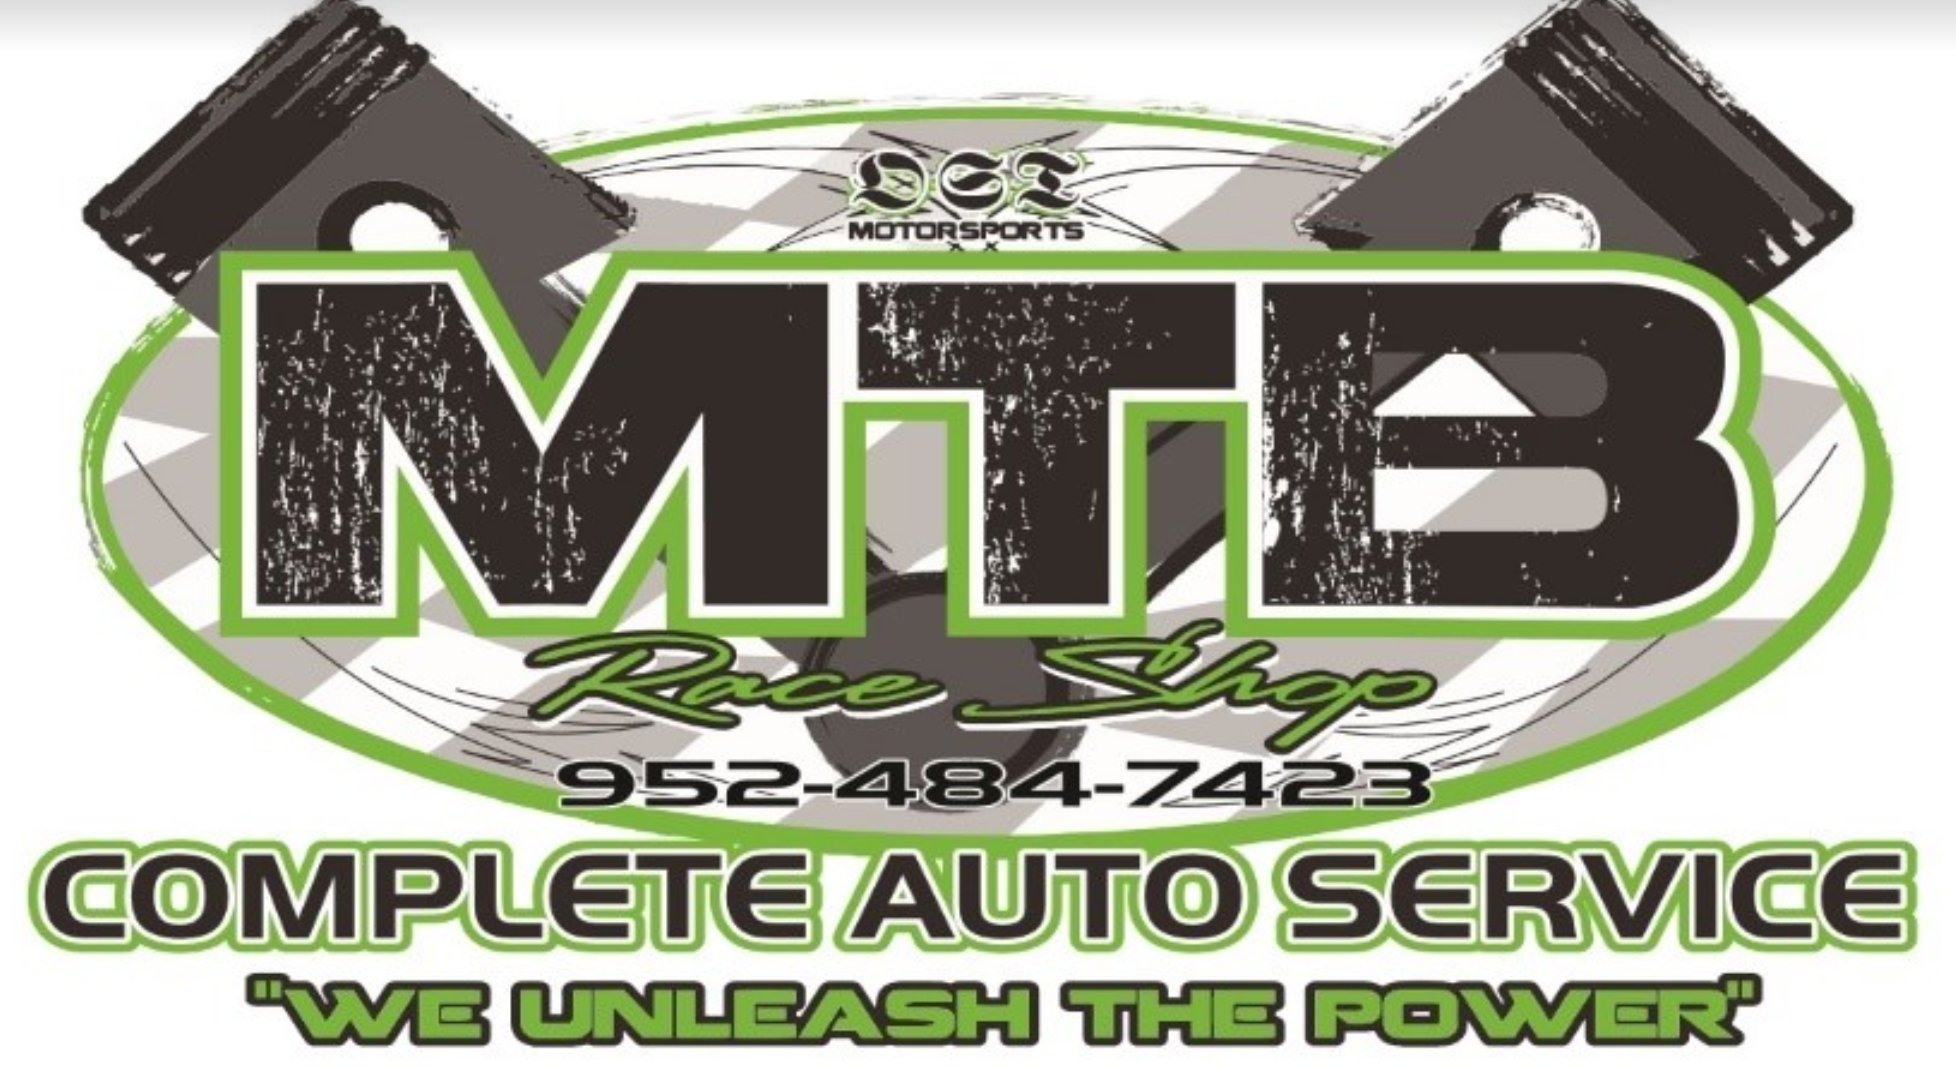 MTB Complete Auto Service Photo